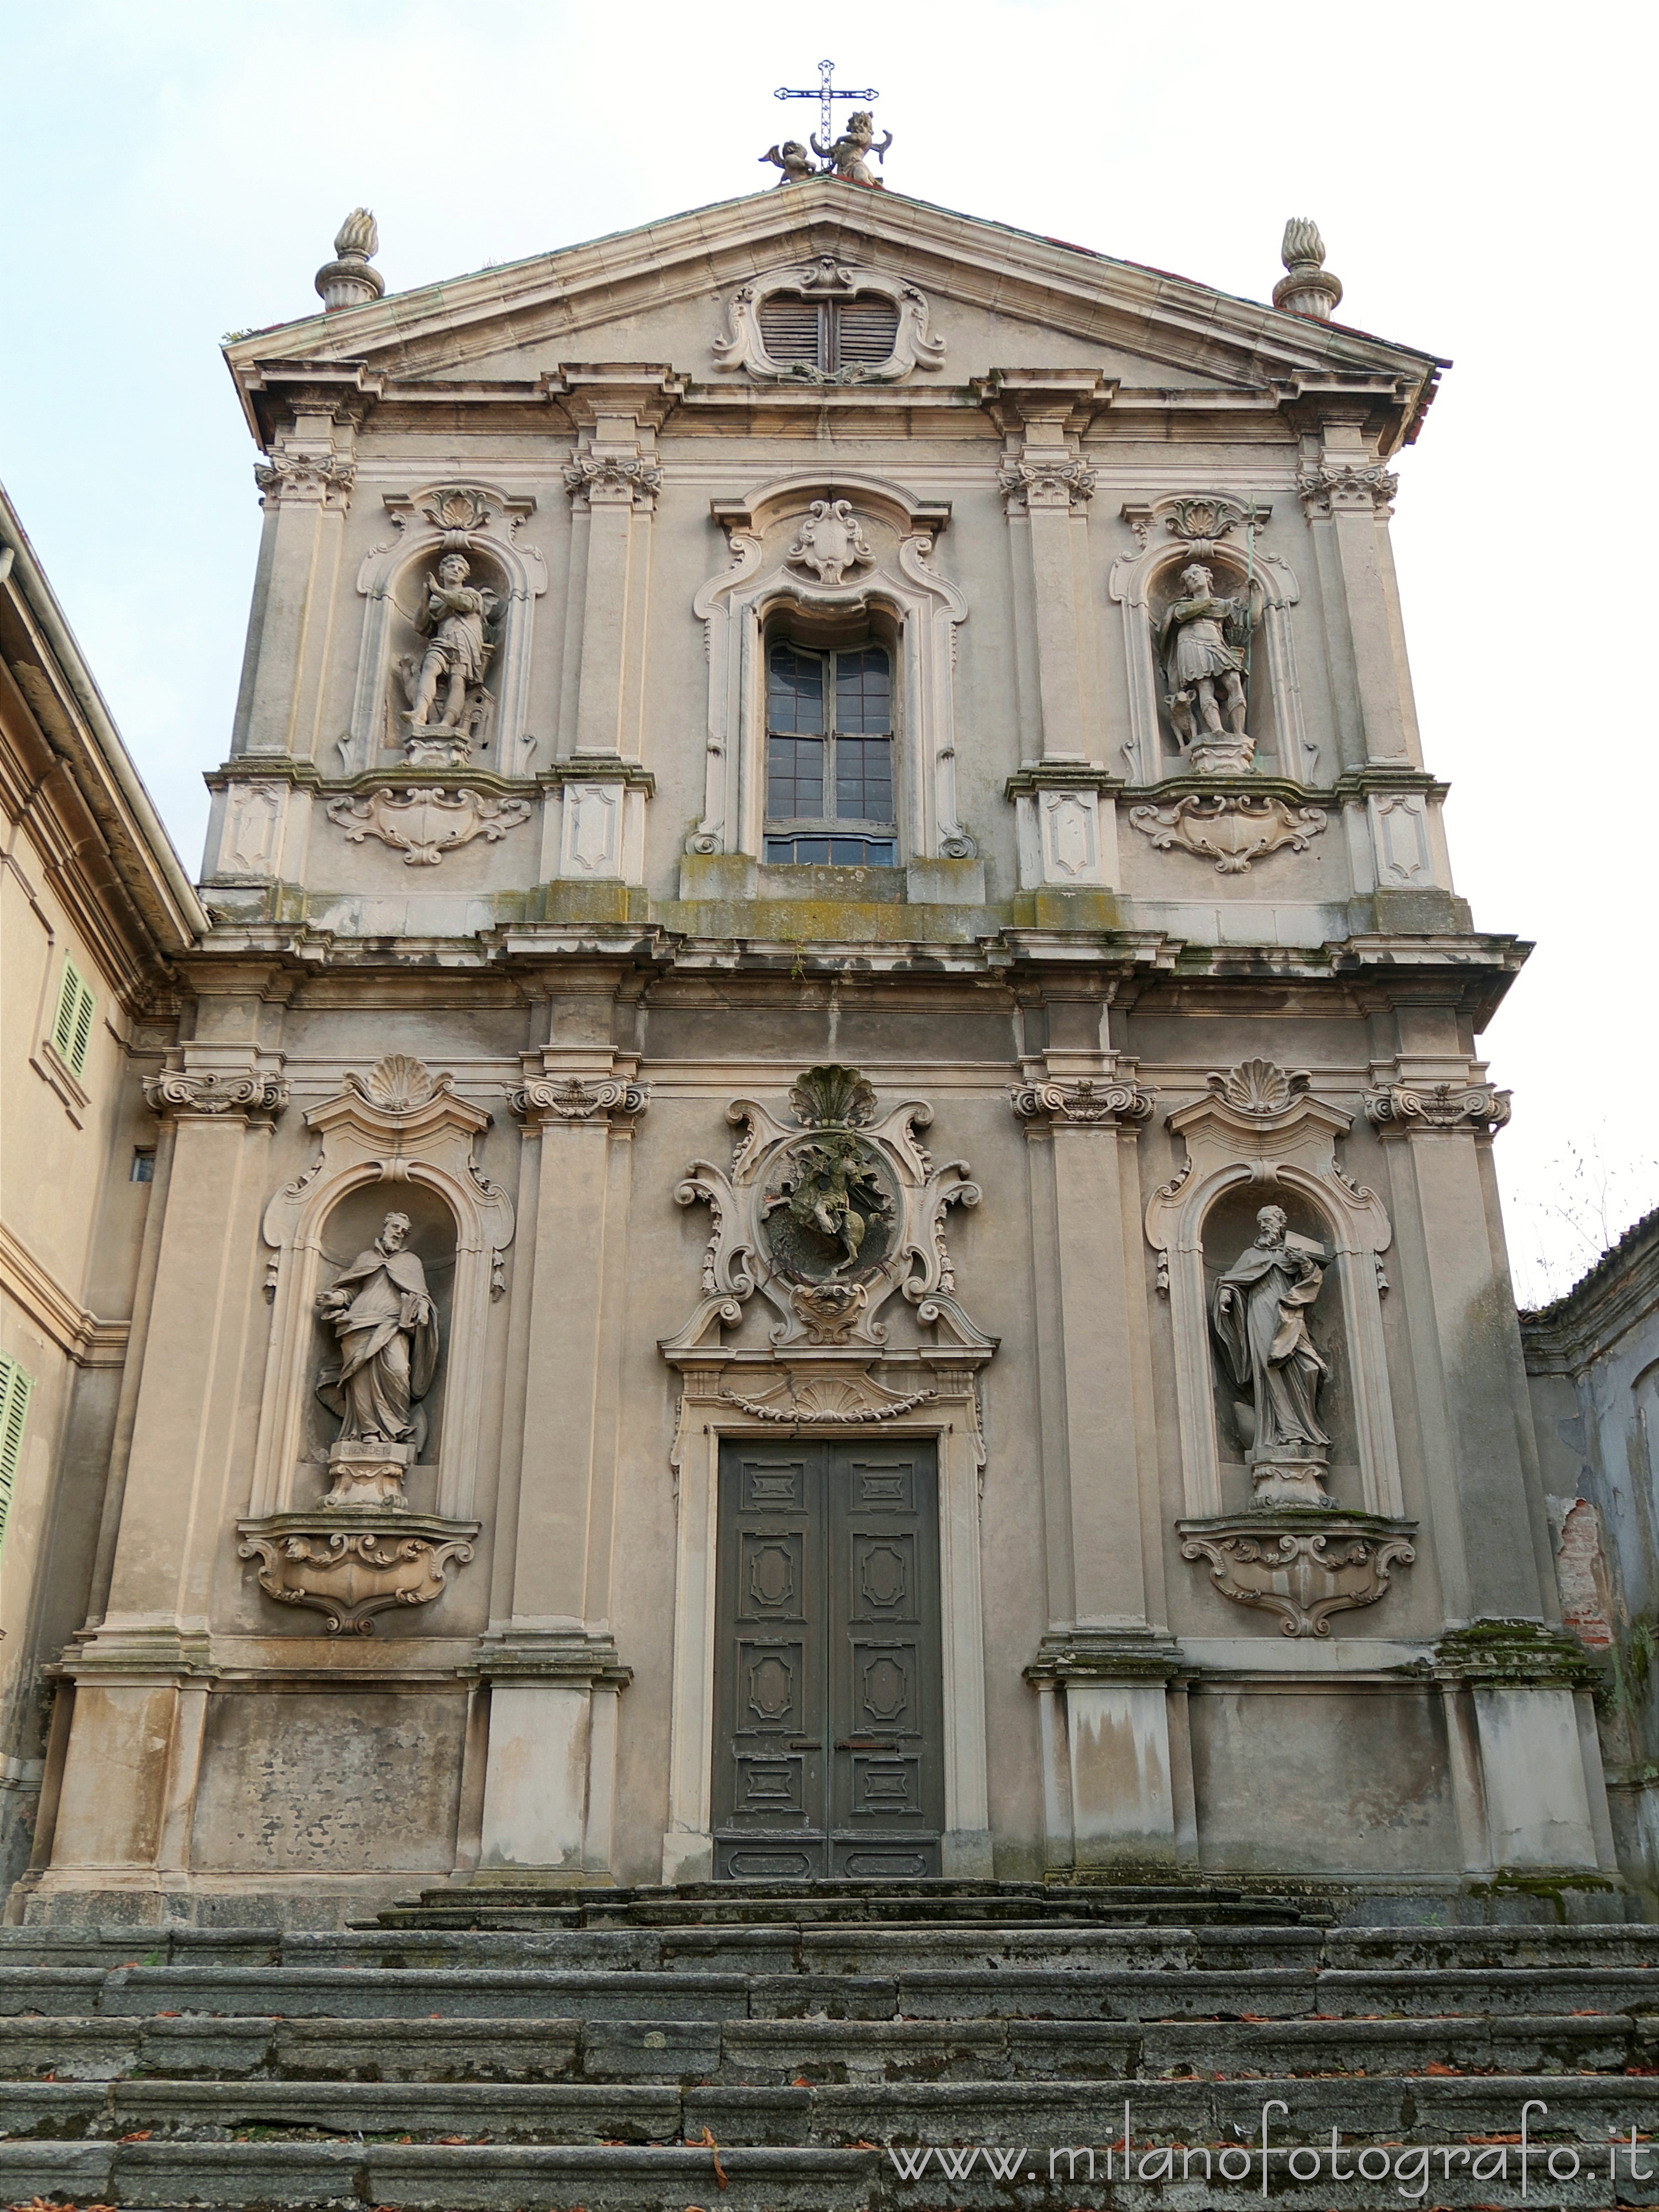 Meda (Monza e Brianza, Italy): Facade of the Church of San Vittore - Meda (Monza e Brianza, Italy)